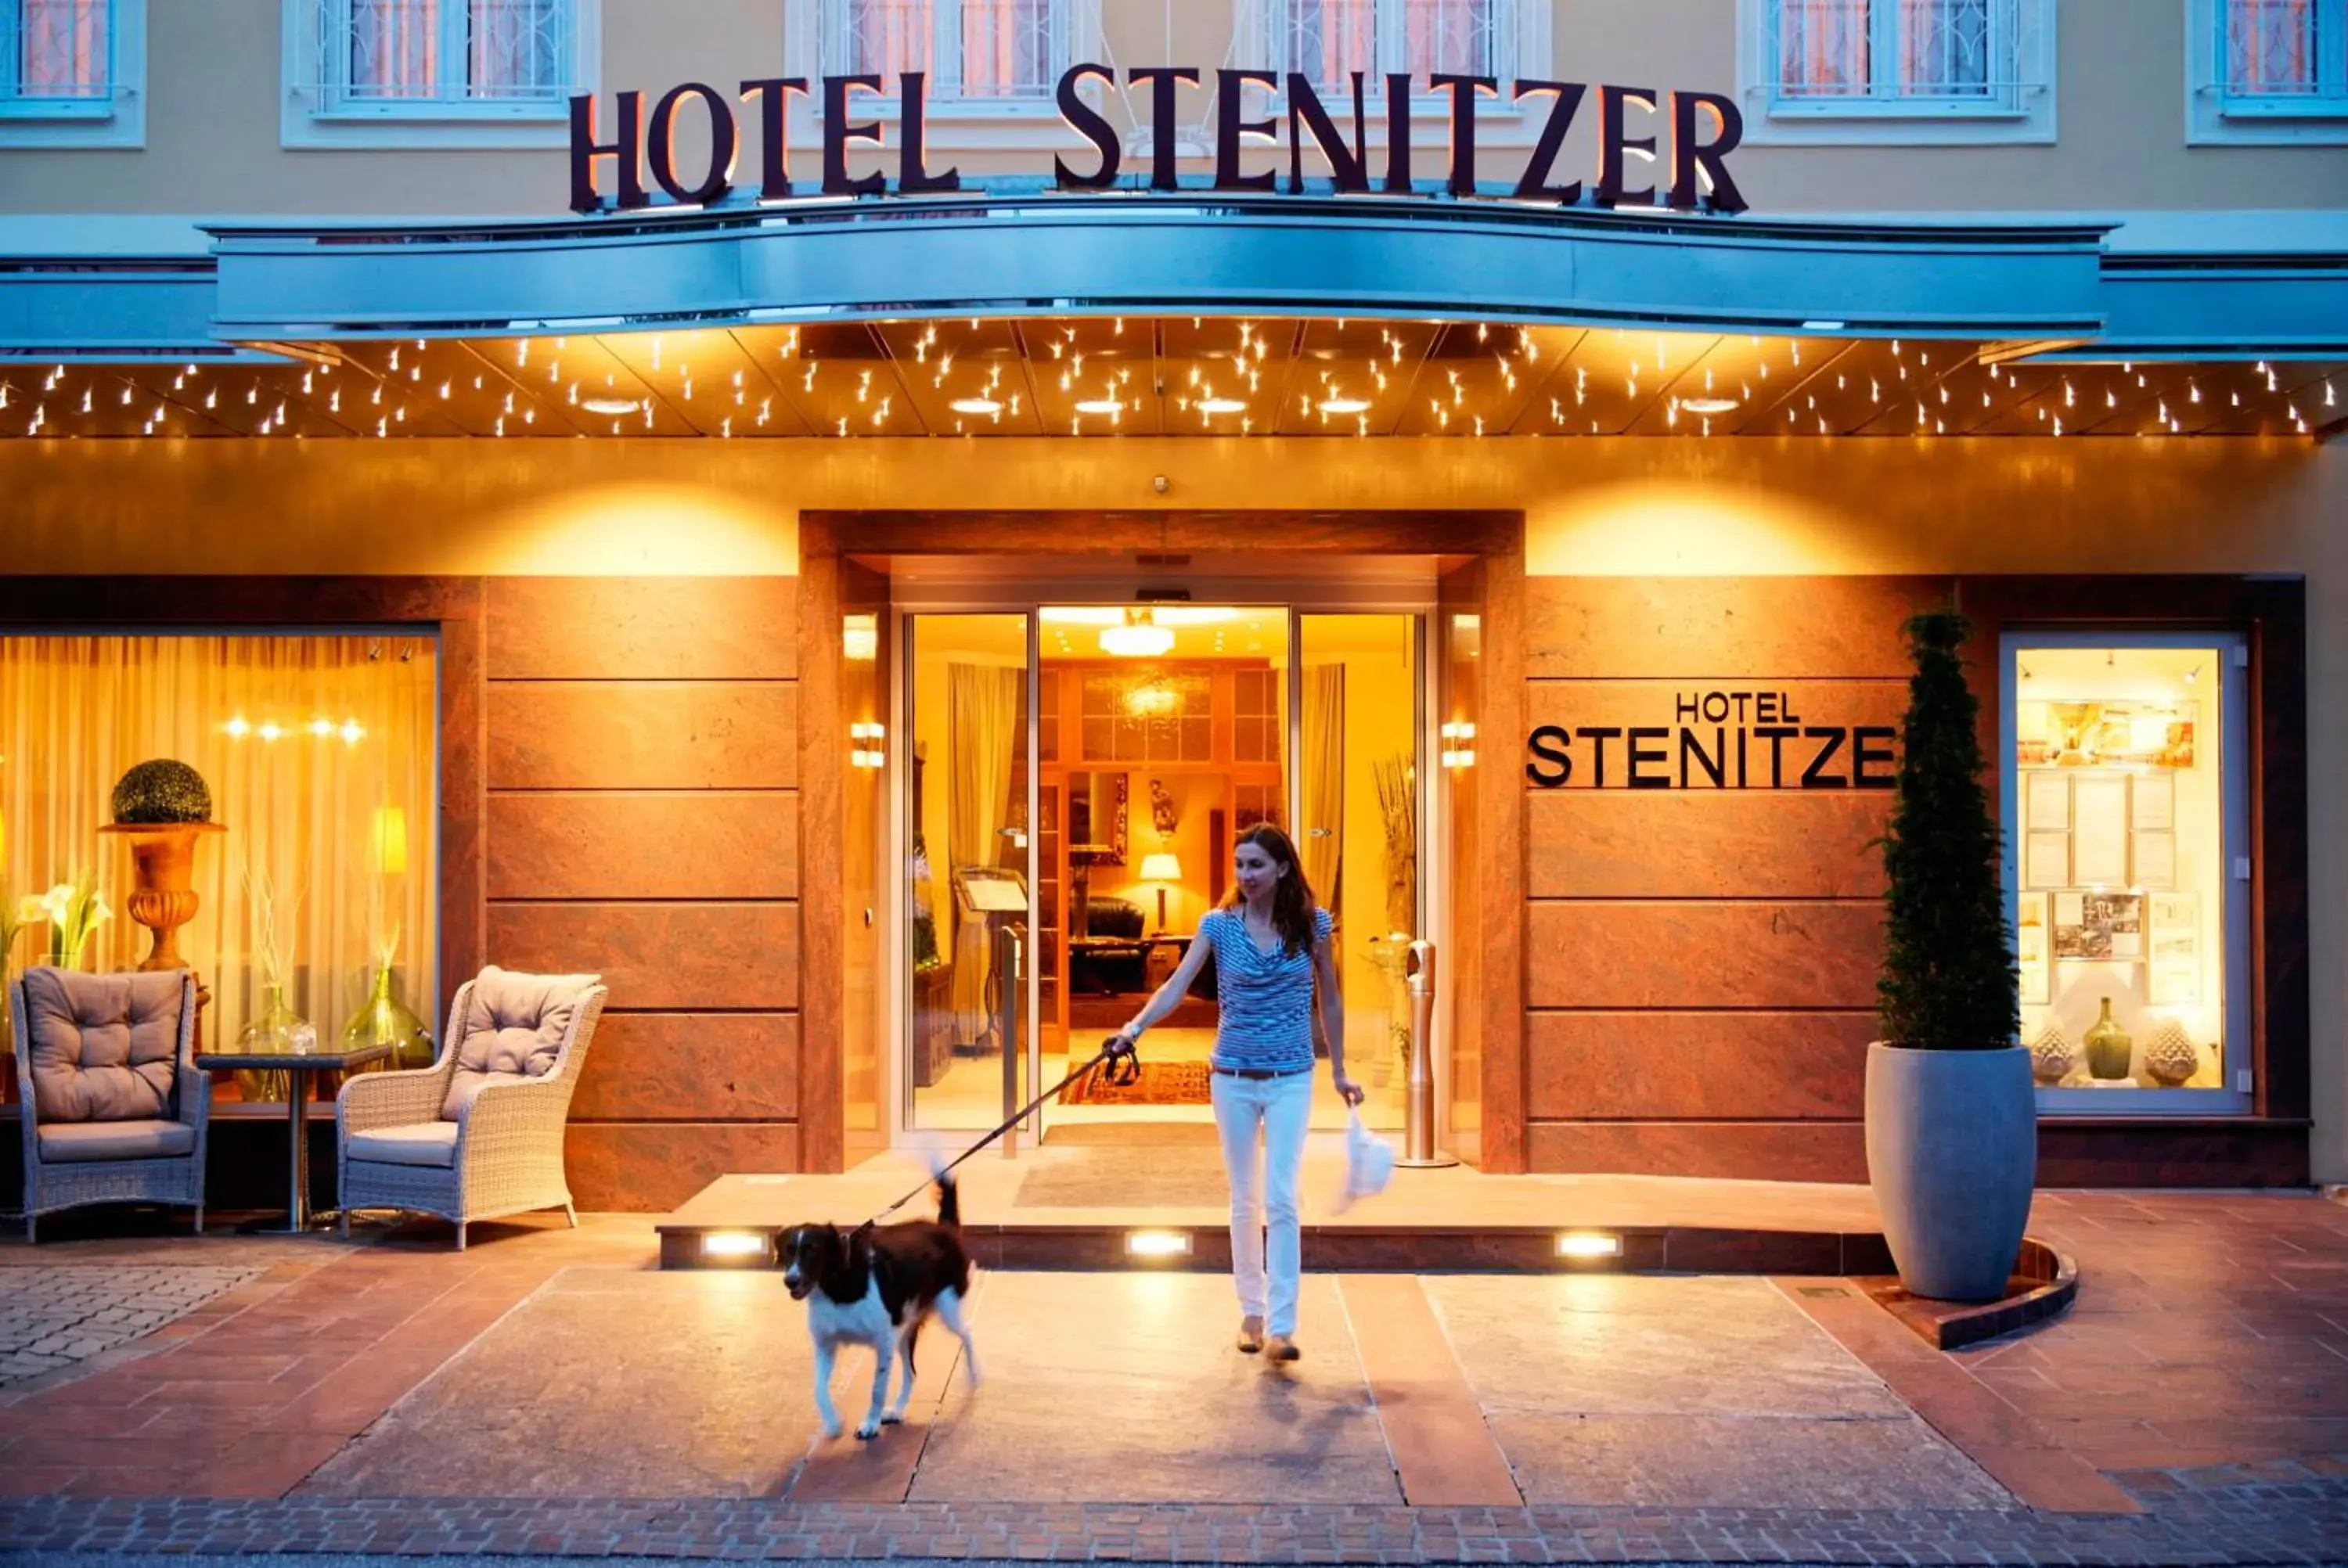 Facade/entrance in Hotel Stenitzer